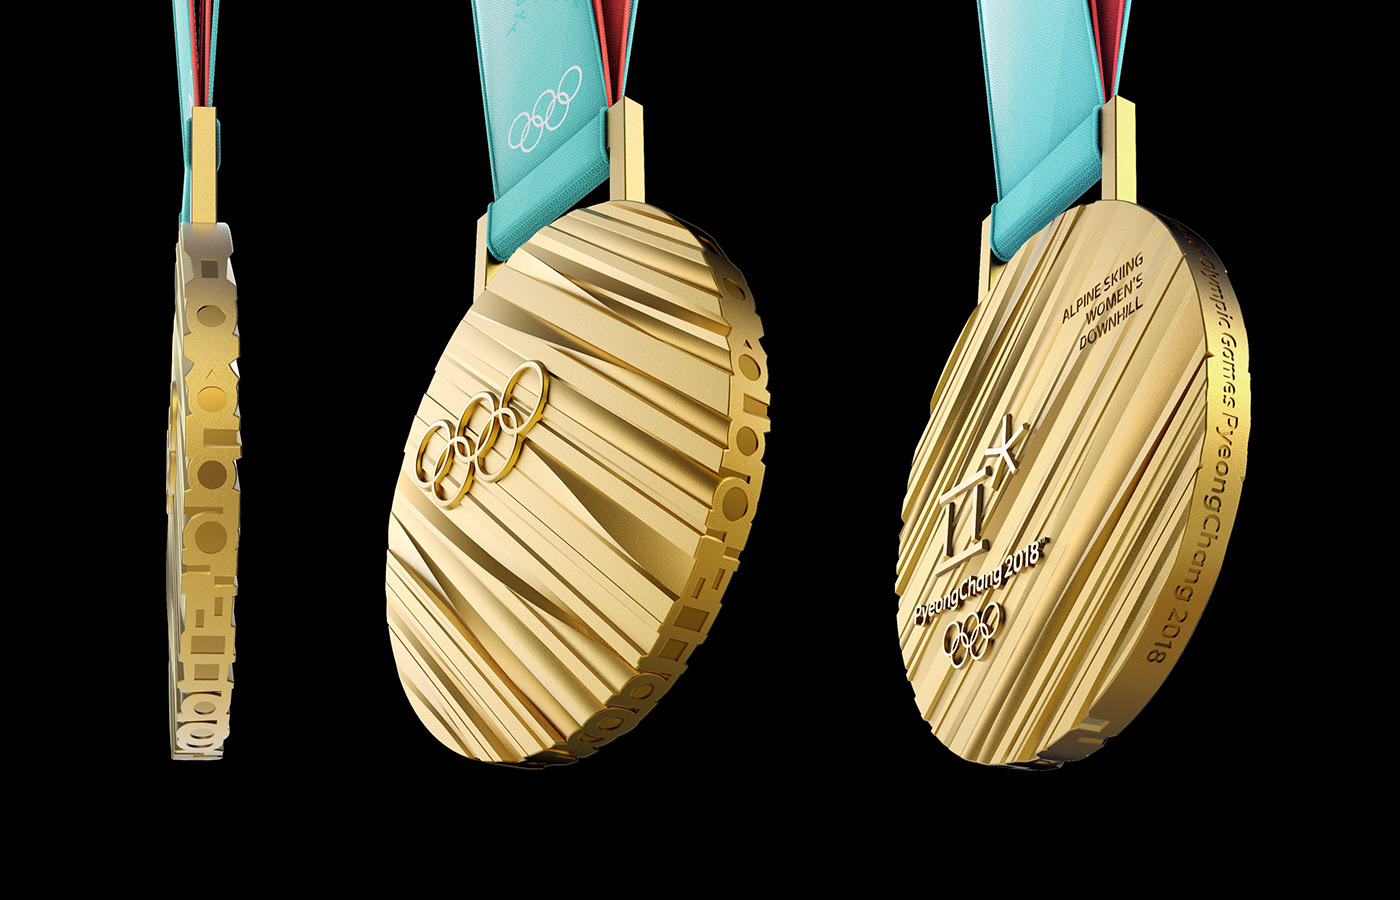 冬奥会奖牌创意设计图片